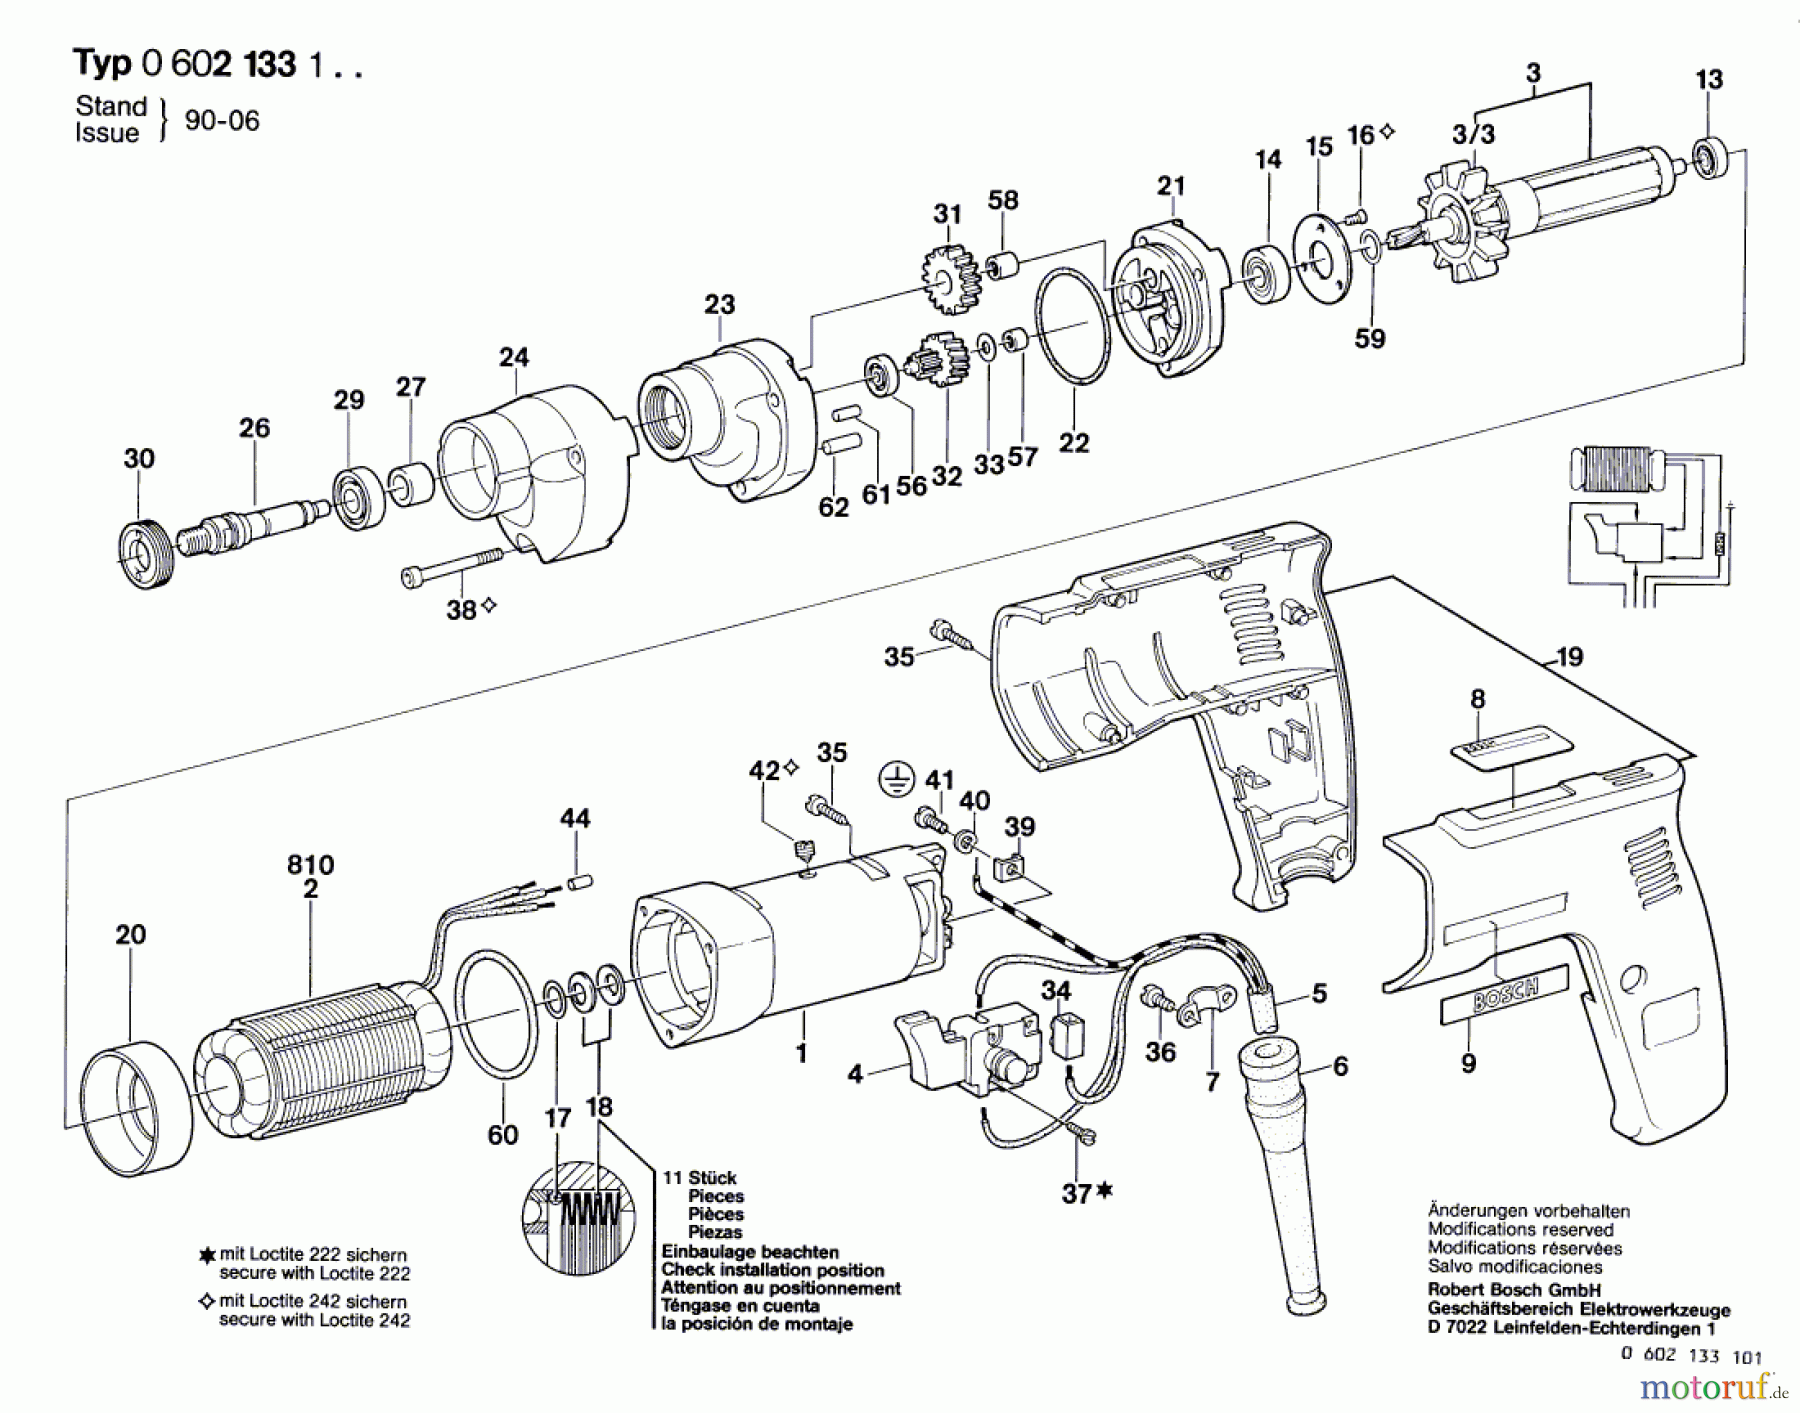  Bosch Werkzeug Bohrmaschine GR.57 Seite 1